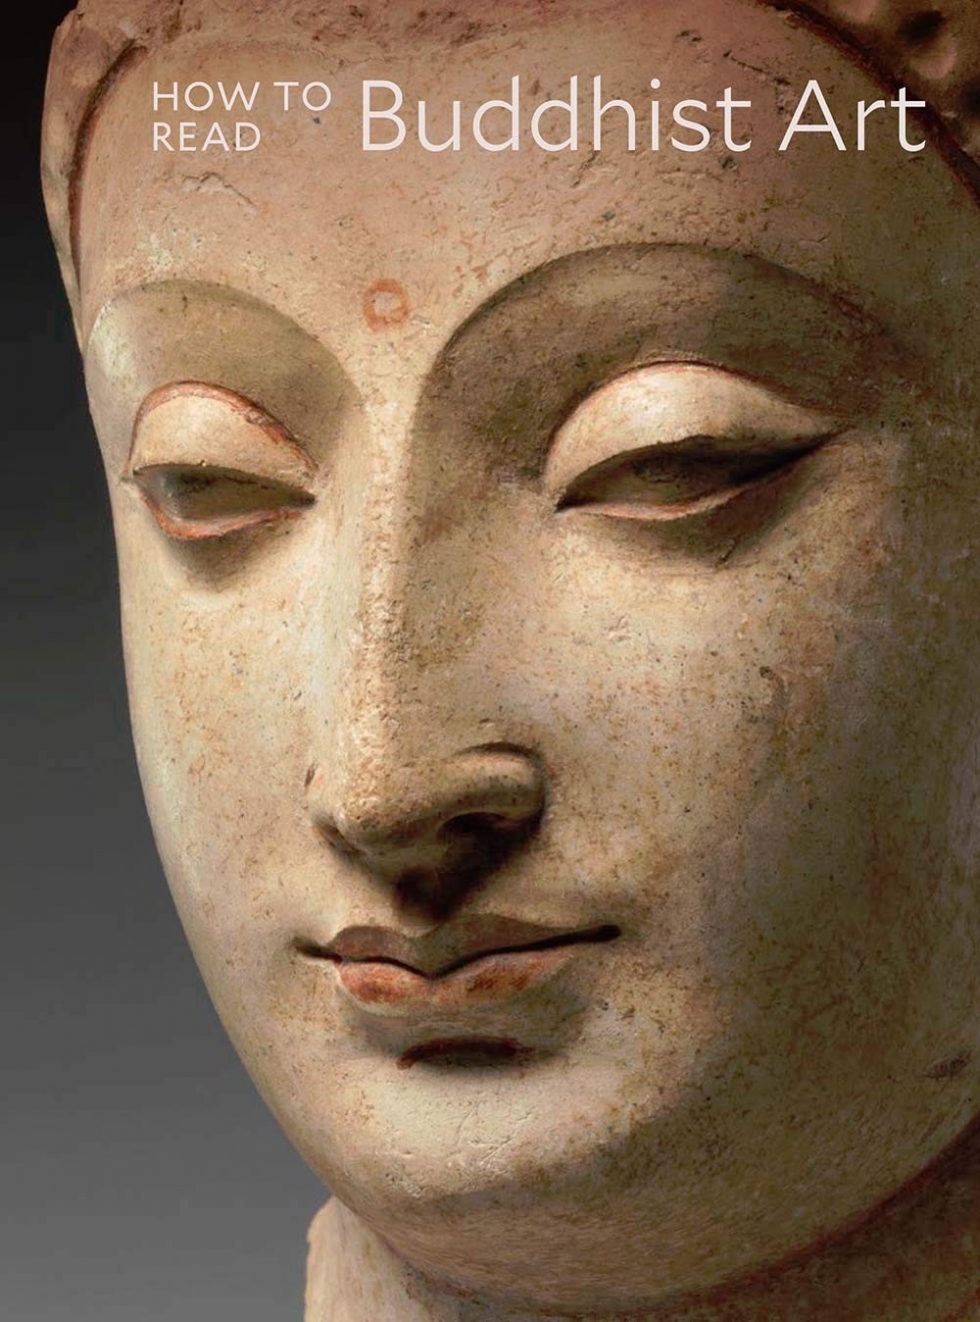 Behrendt Kurt A. How to Read Buddhist Art 